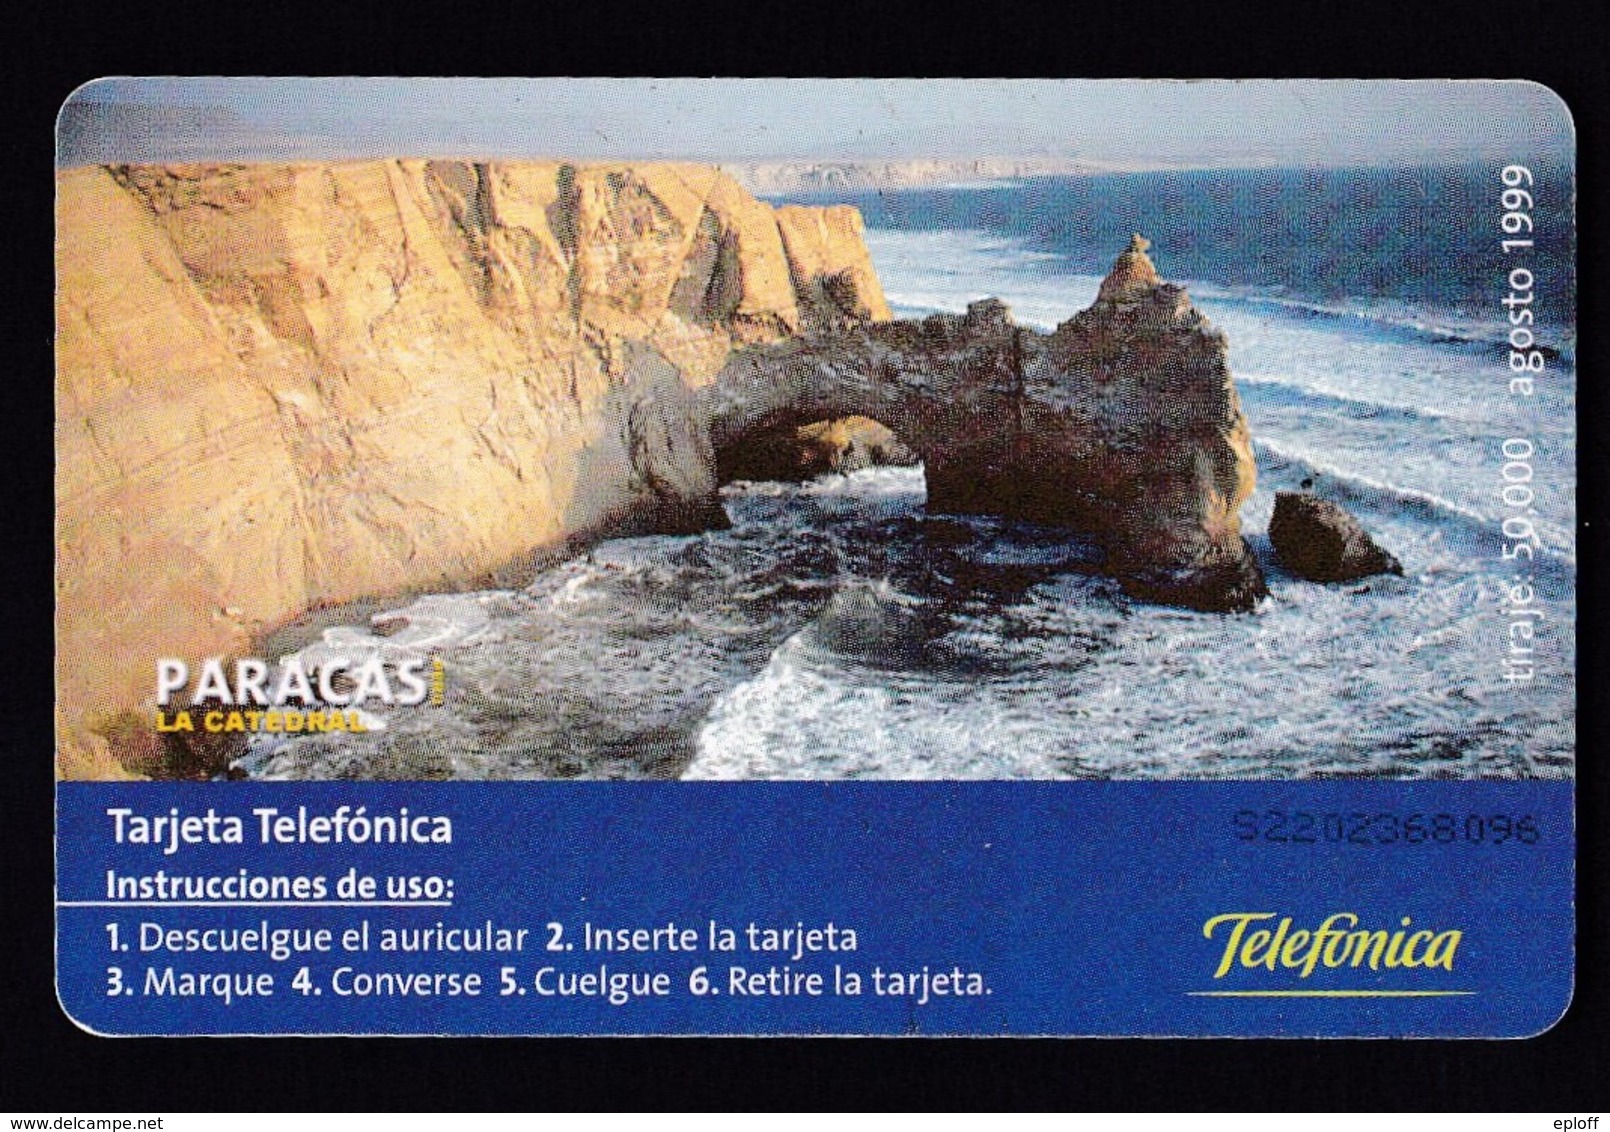 Pérou  Péru Telefonica   Télécarte à Puce    "Paracas Zarcillos"  "la Catédral" De 08.1999   Tirage 50 000 Exemplaires - Perú